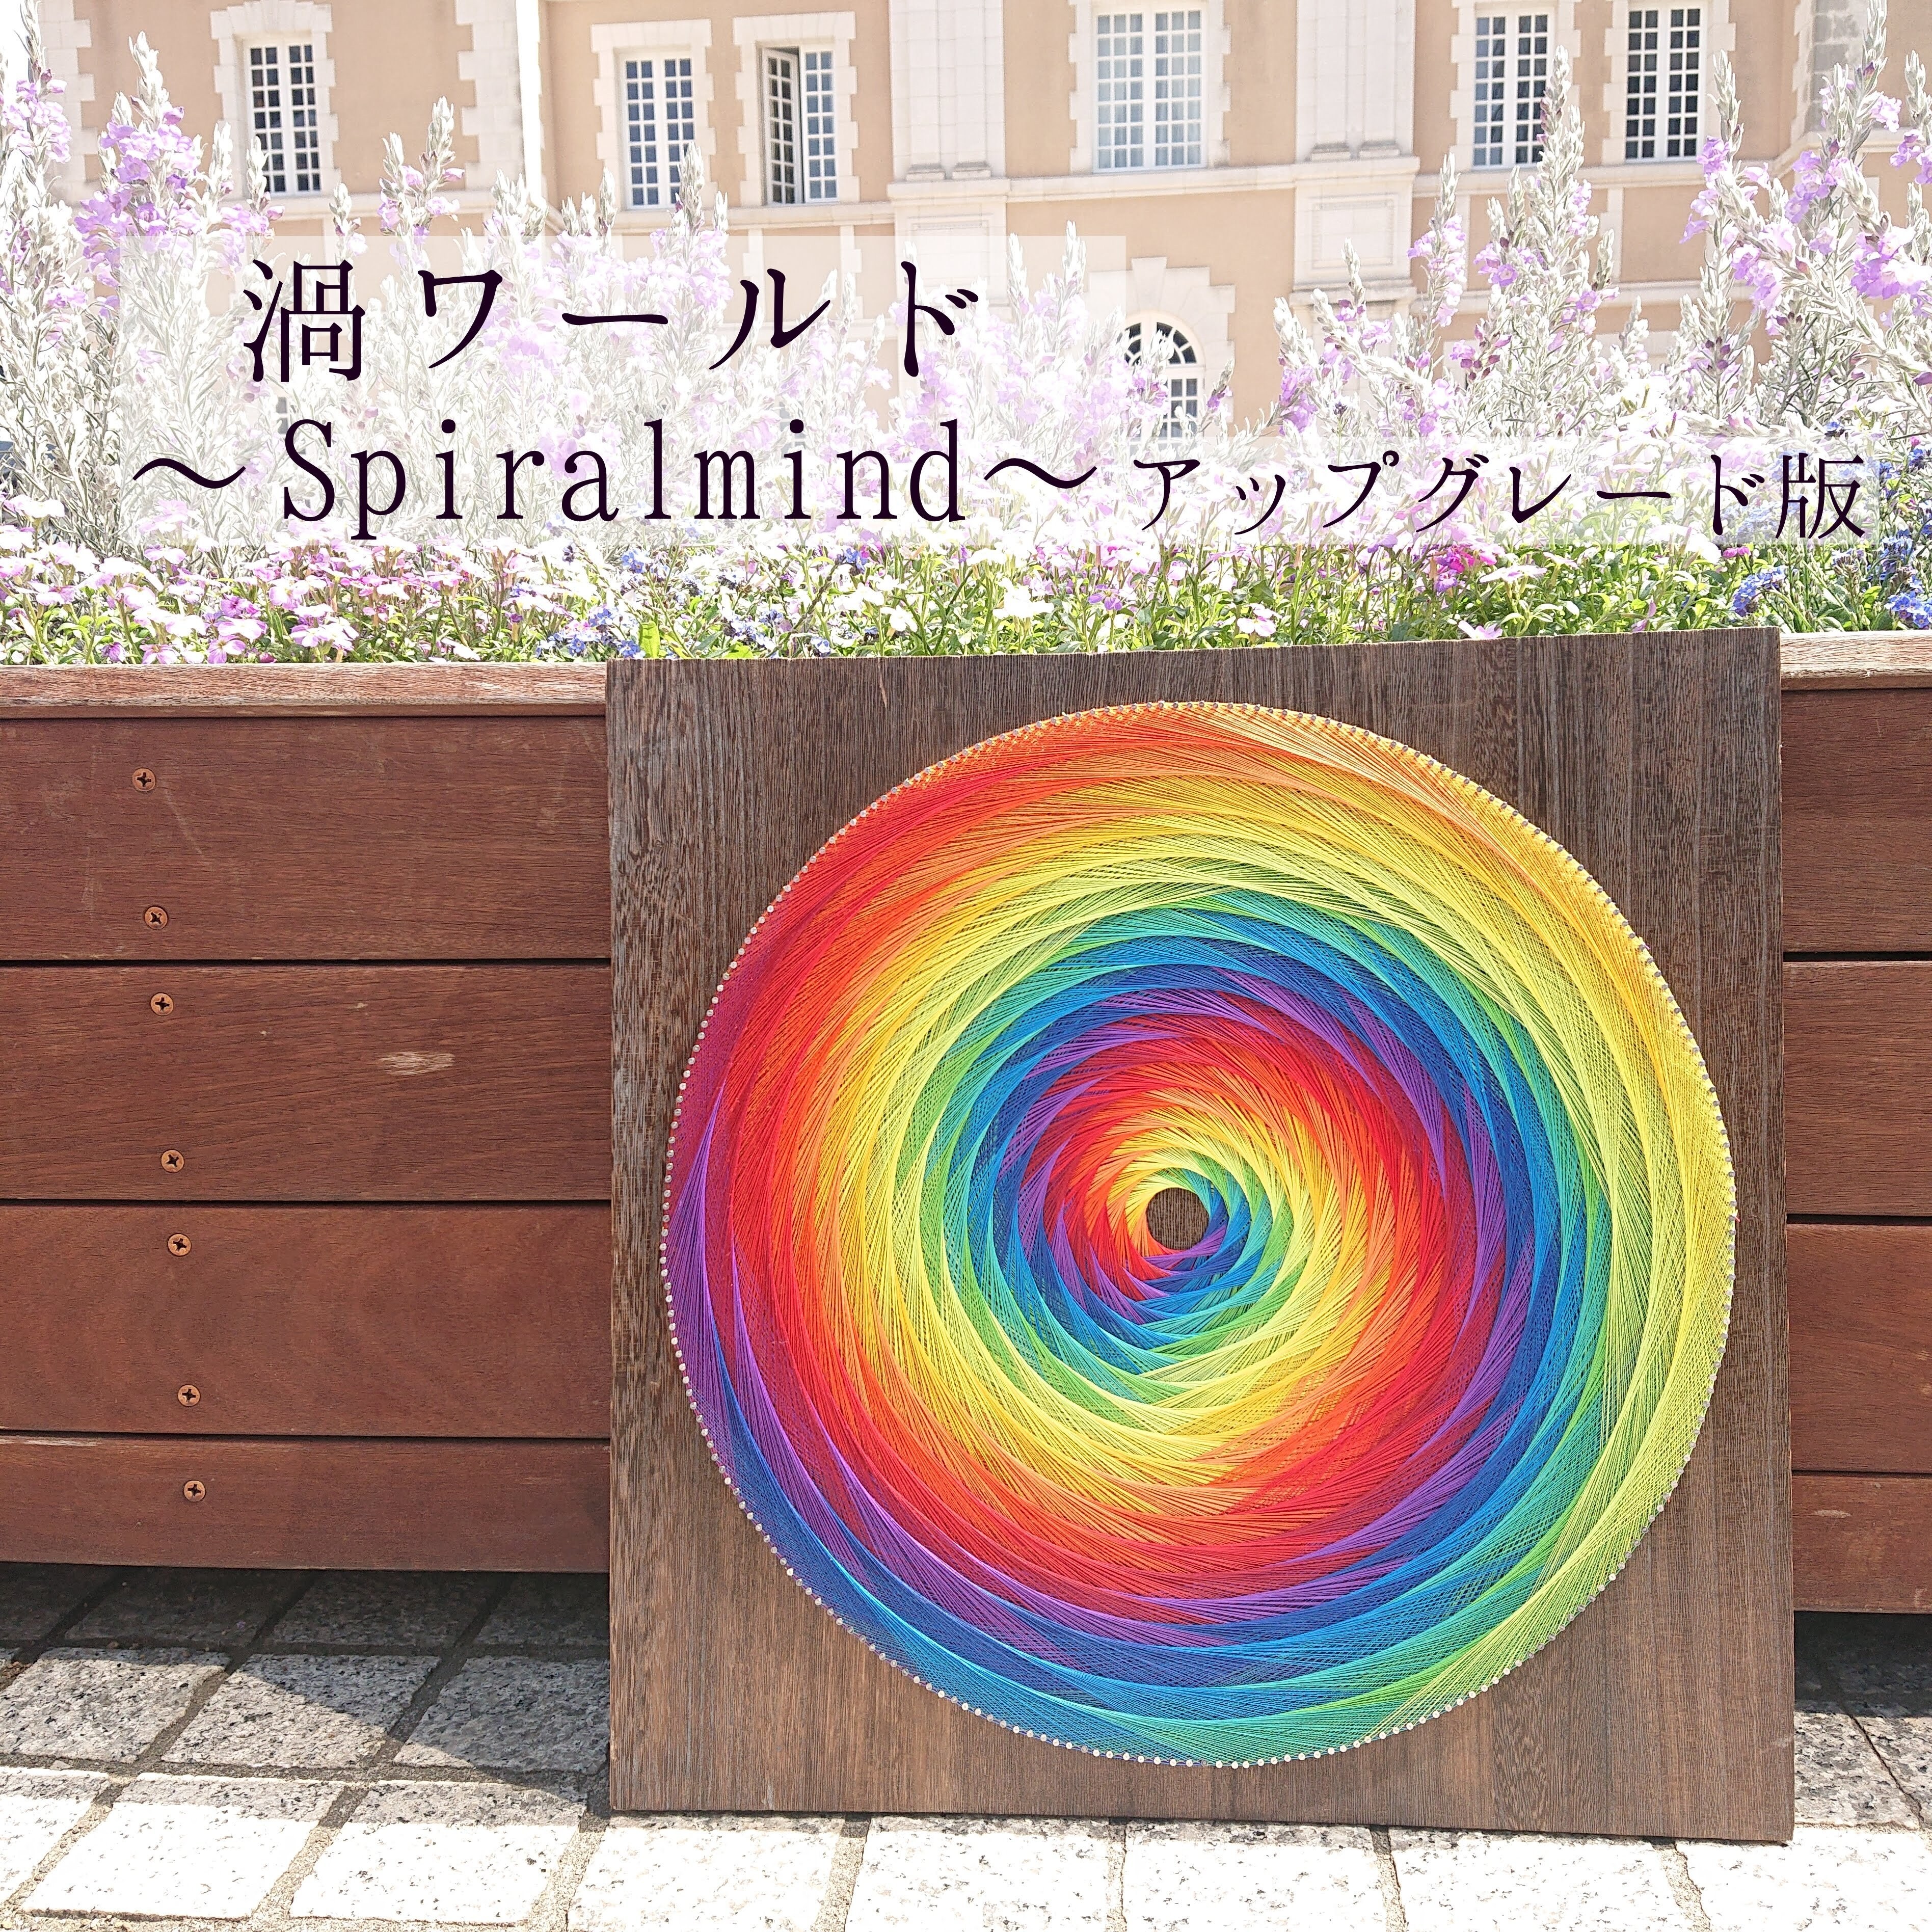 糸かけアート【渦ワールド〜Spiral mind〜】アップグレード版